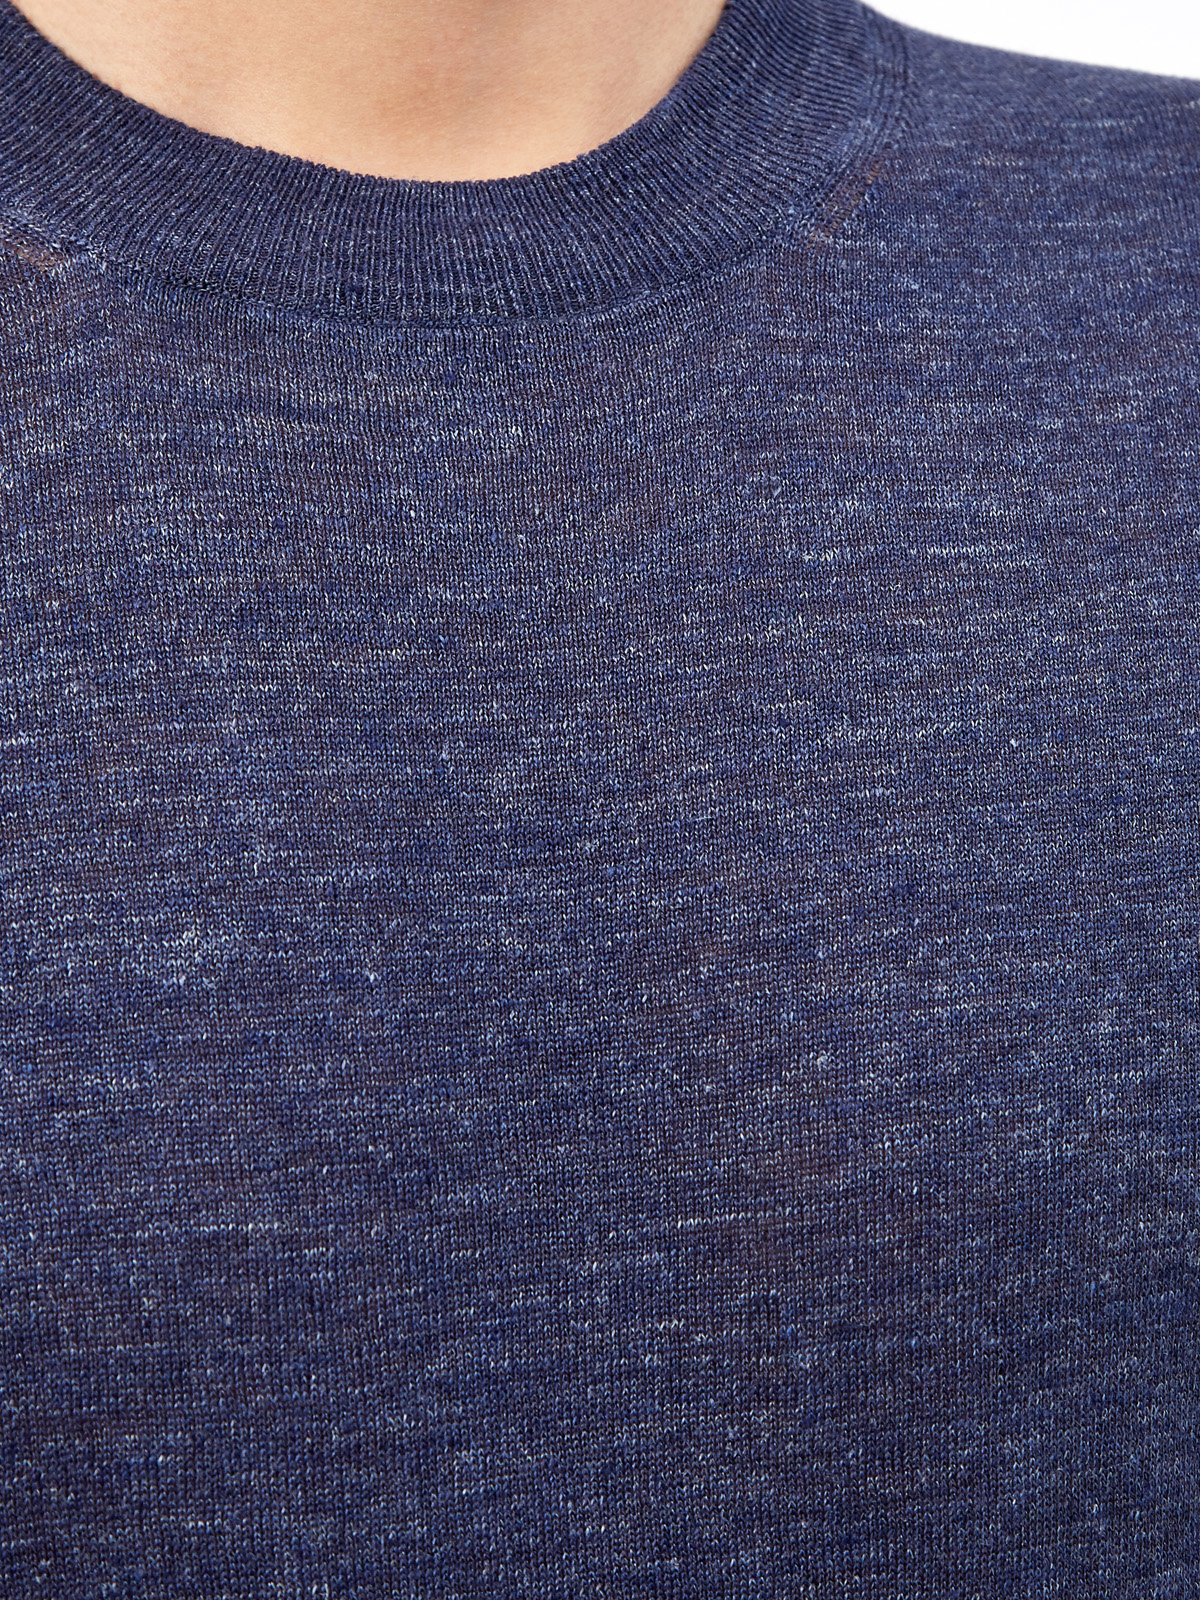 Джемпер в стиле leisure из льна и хлопка BRUNELLO CUCINELLI, цвет синий, размер 46;50;52;54;56;48 - фото 5